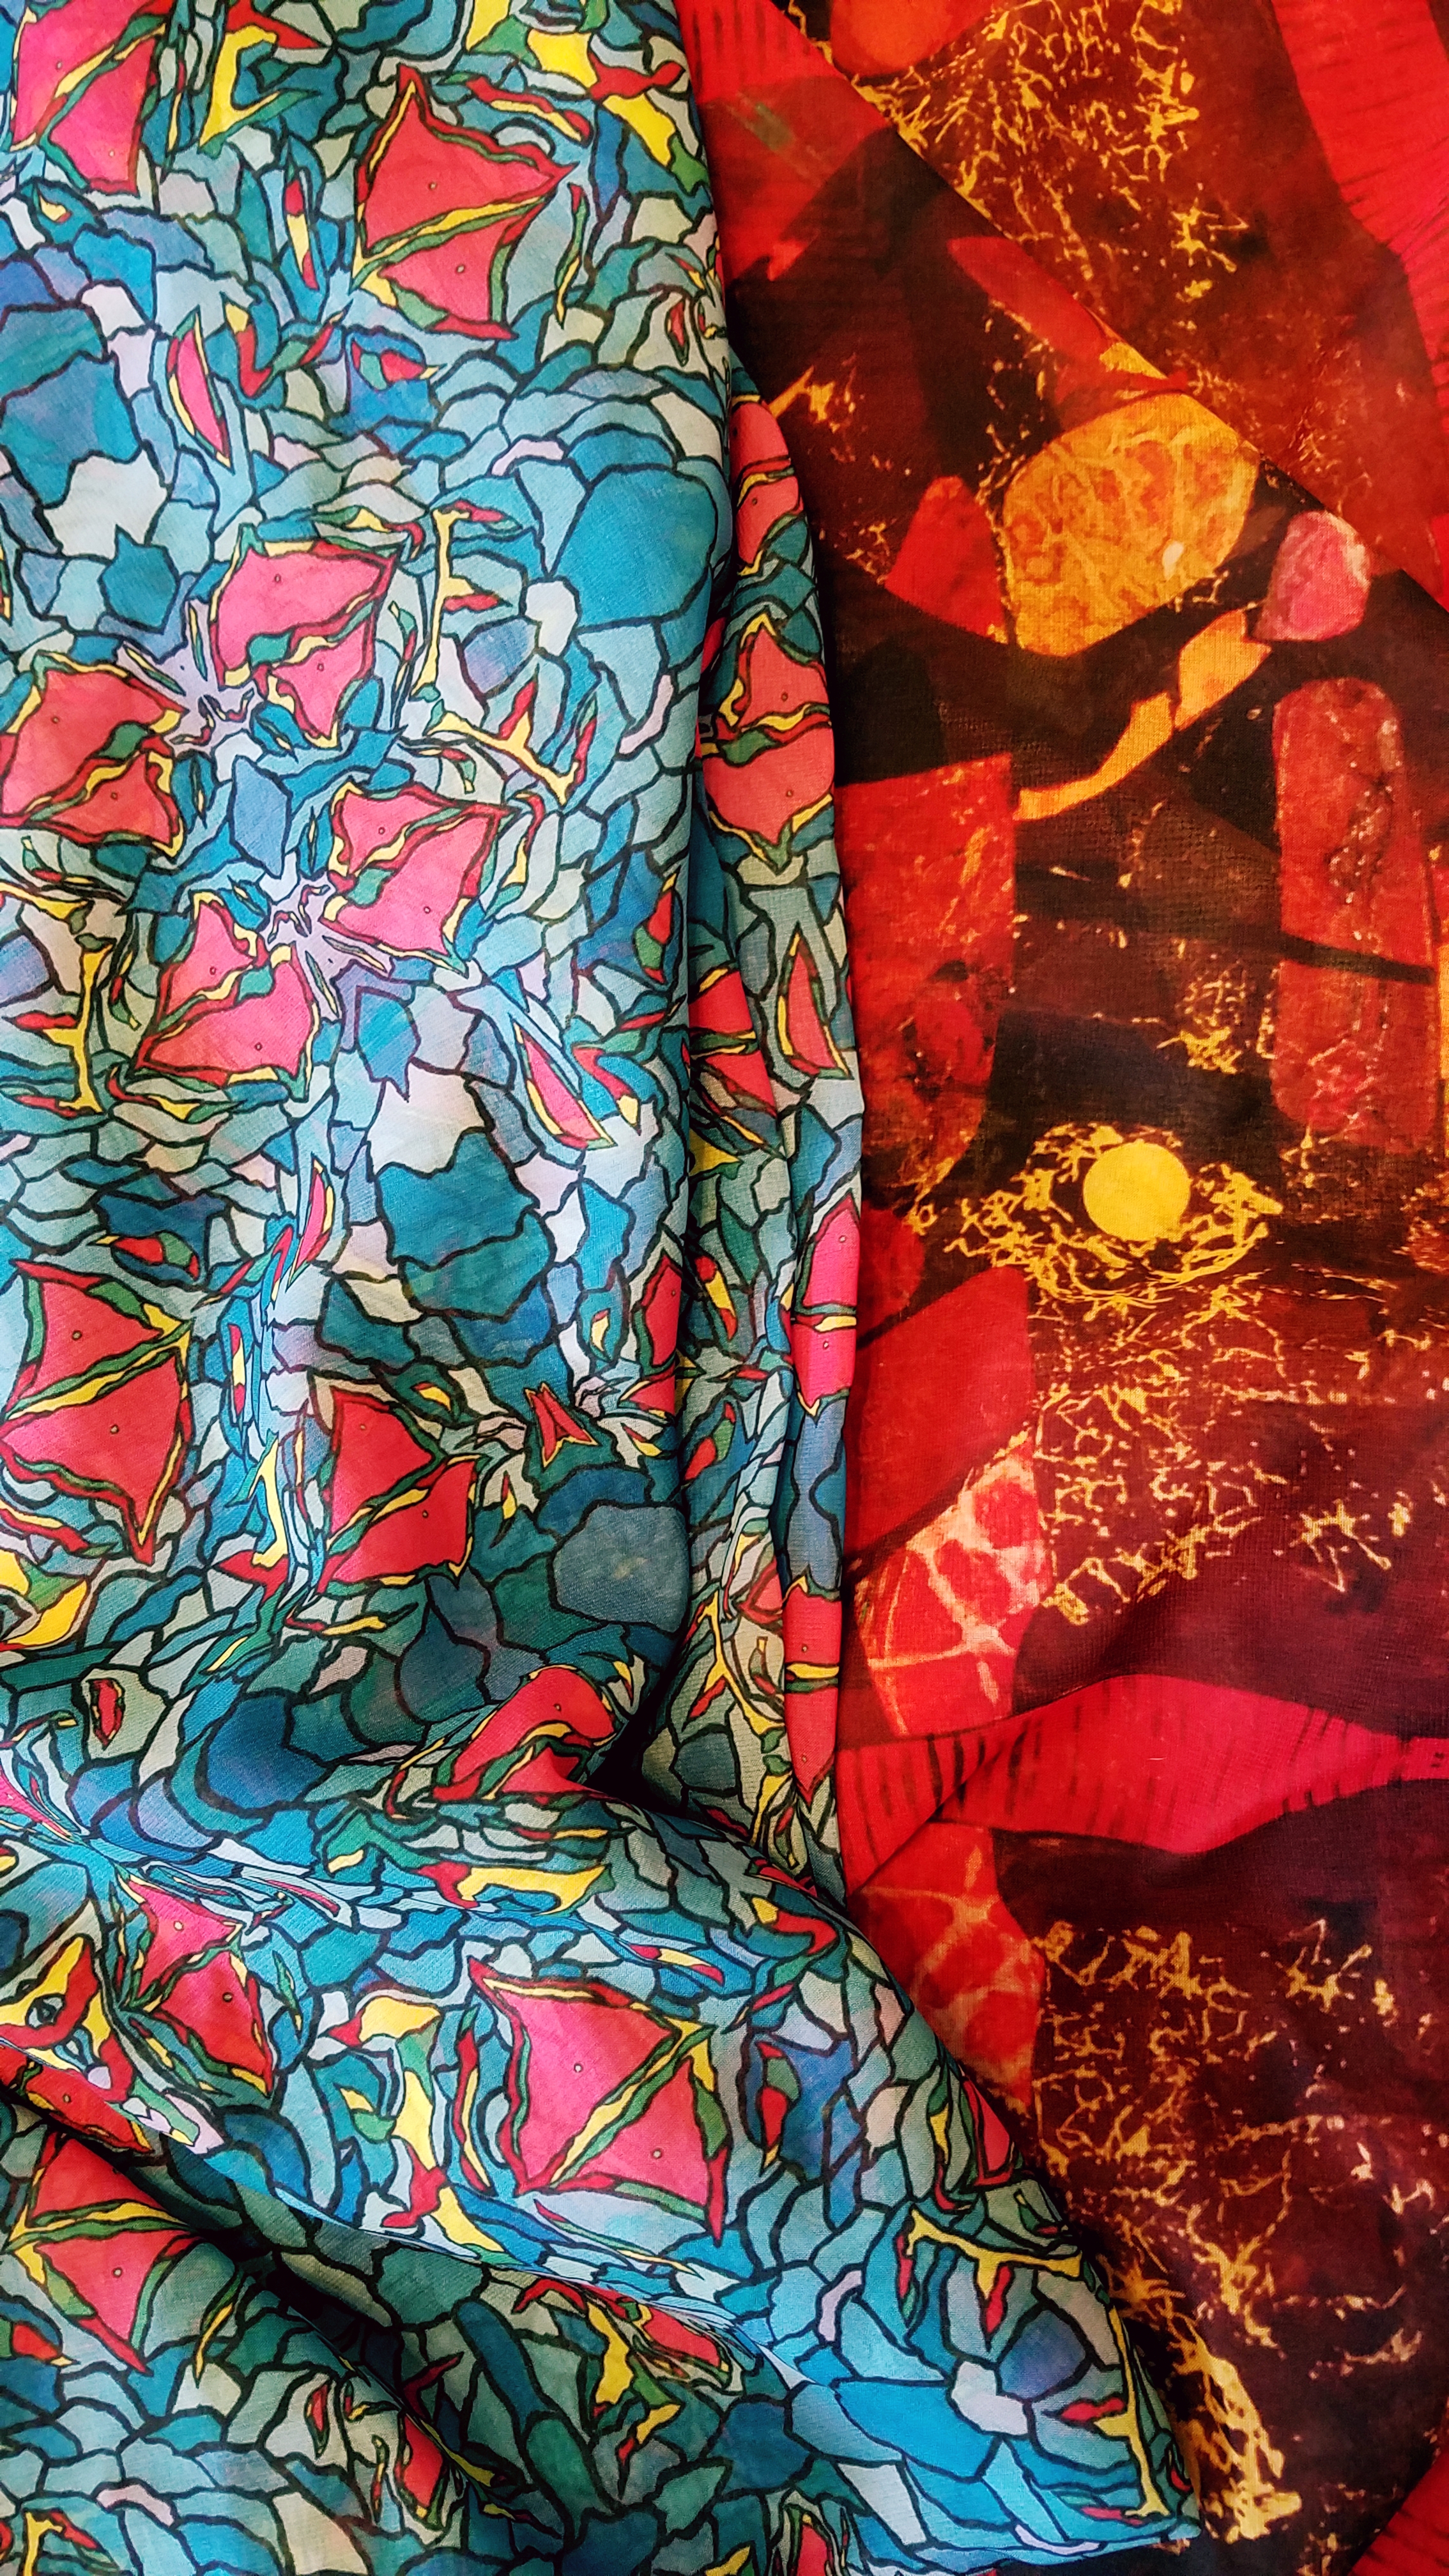  Art printed on sheer fabric for kimono style tops. 